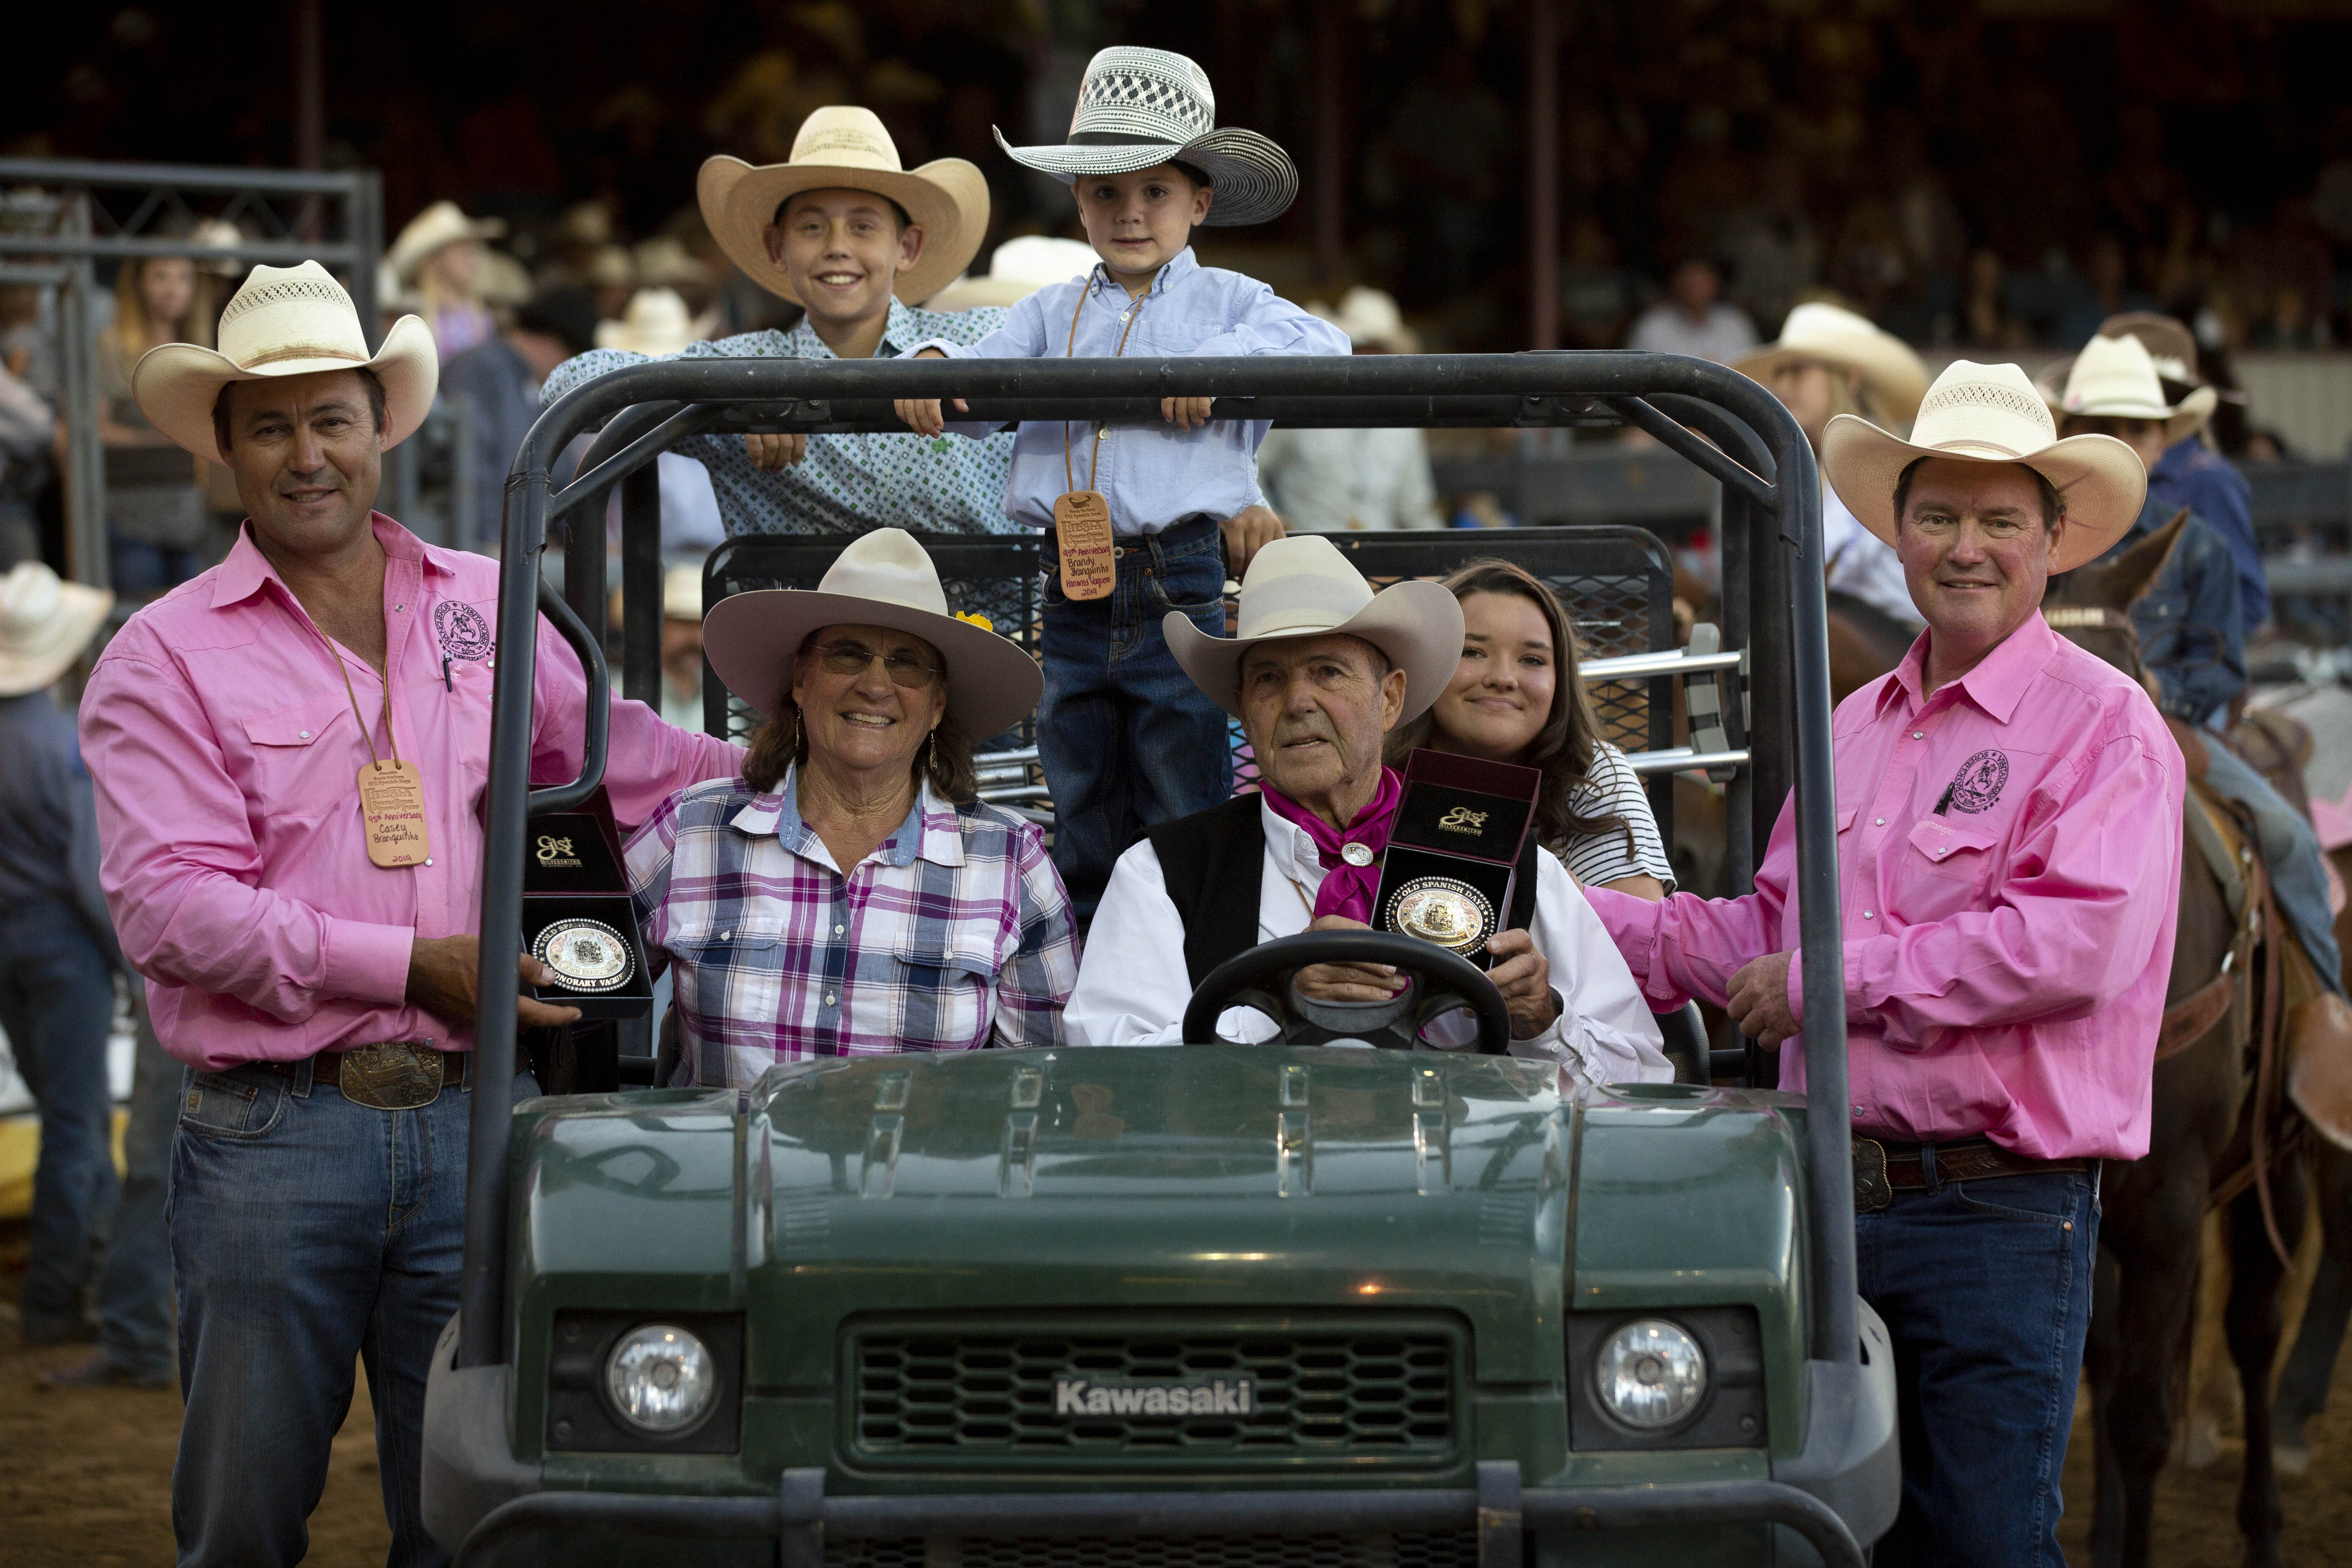 John, Brandy Branquinho celebrate Fiesta Rodeo as Honored Vaqueros